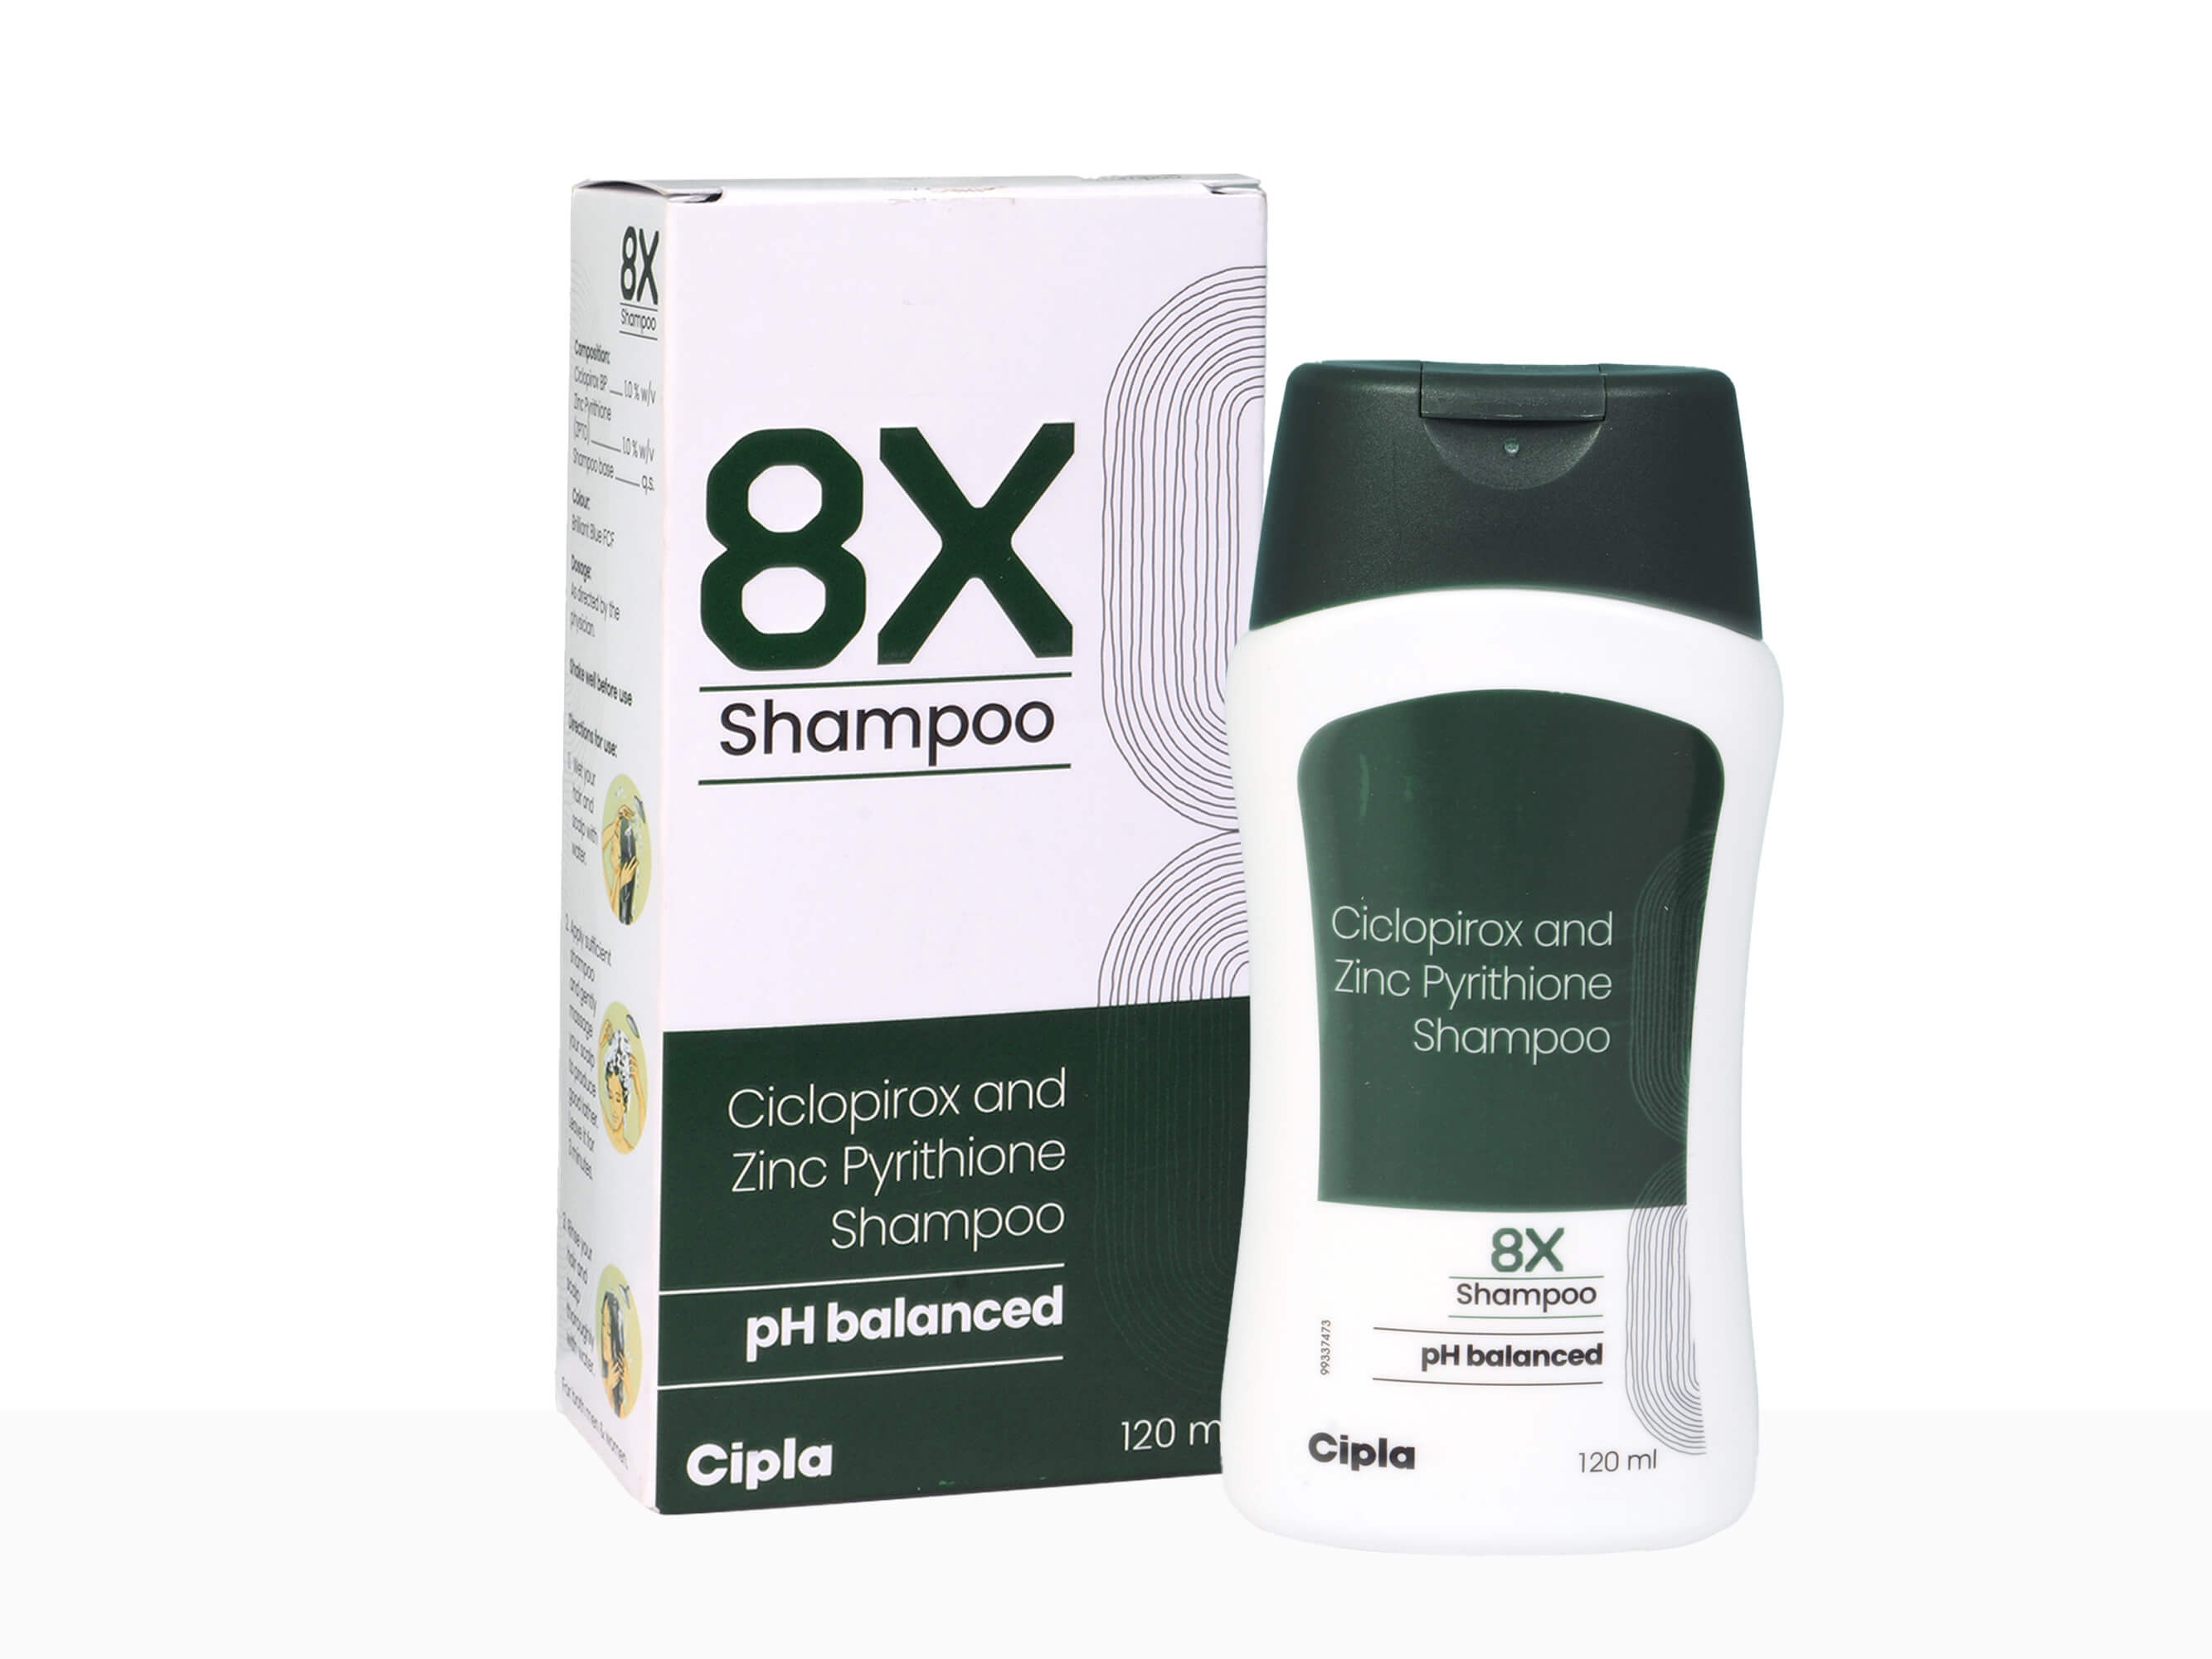  8x Shampoo - Clinikally